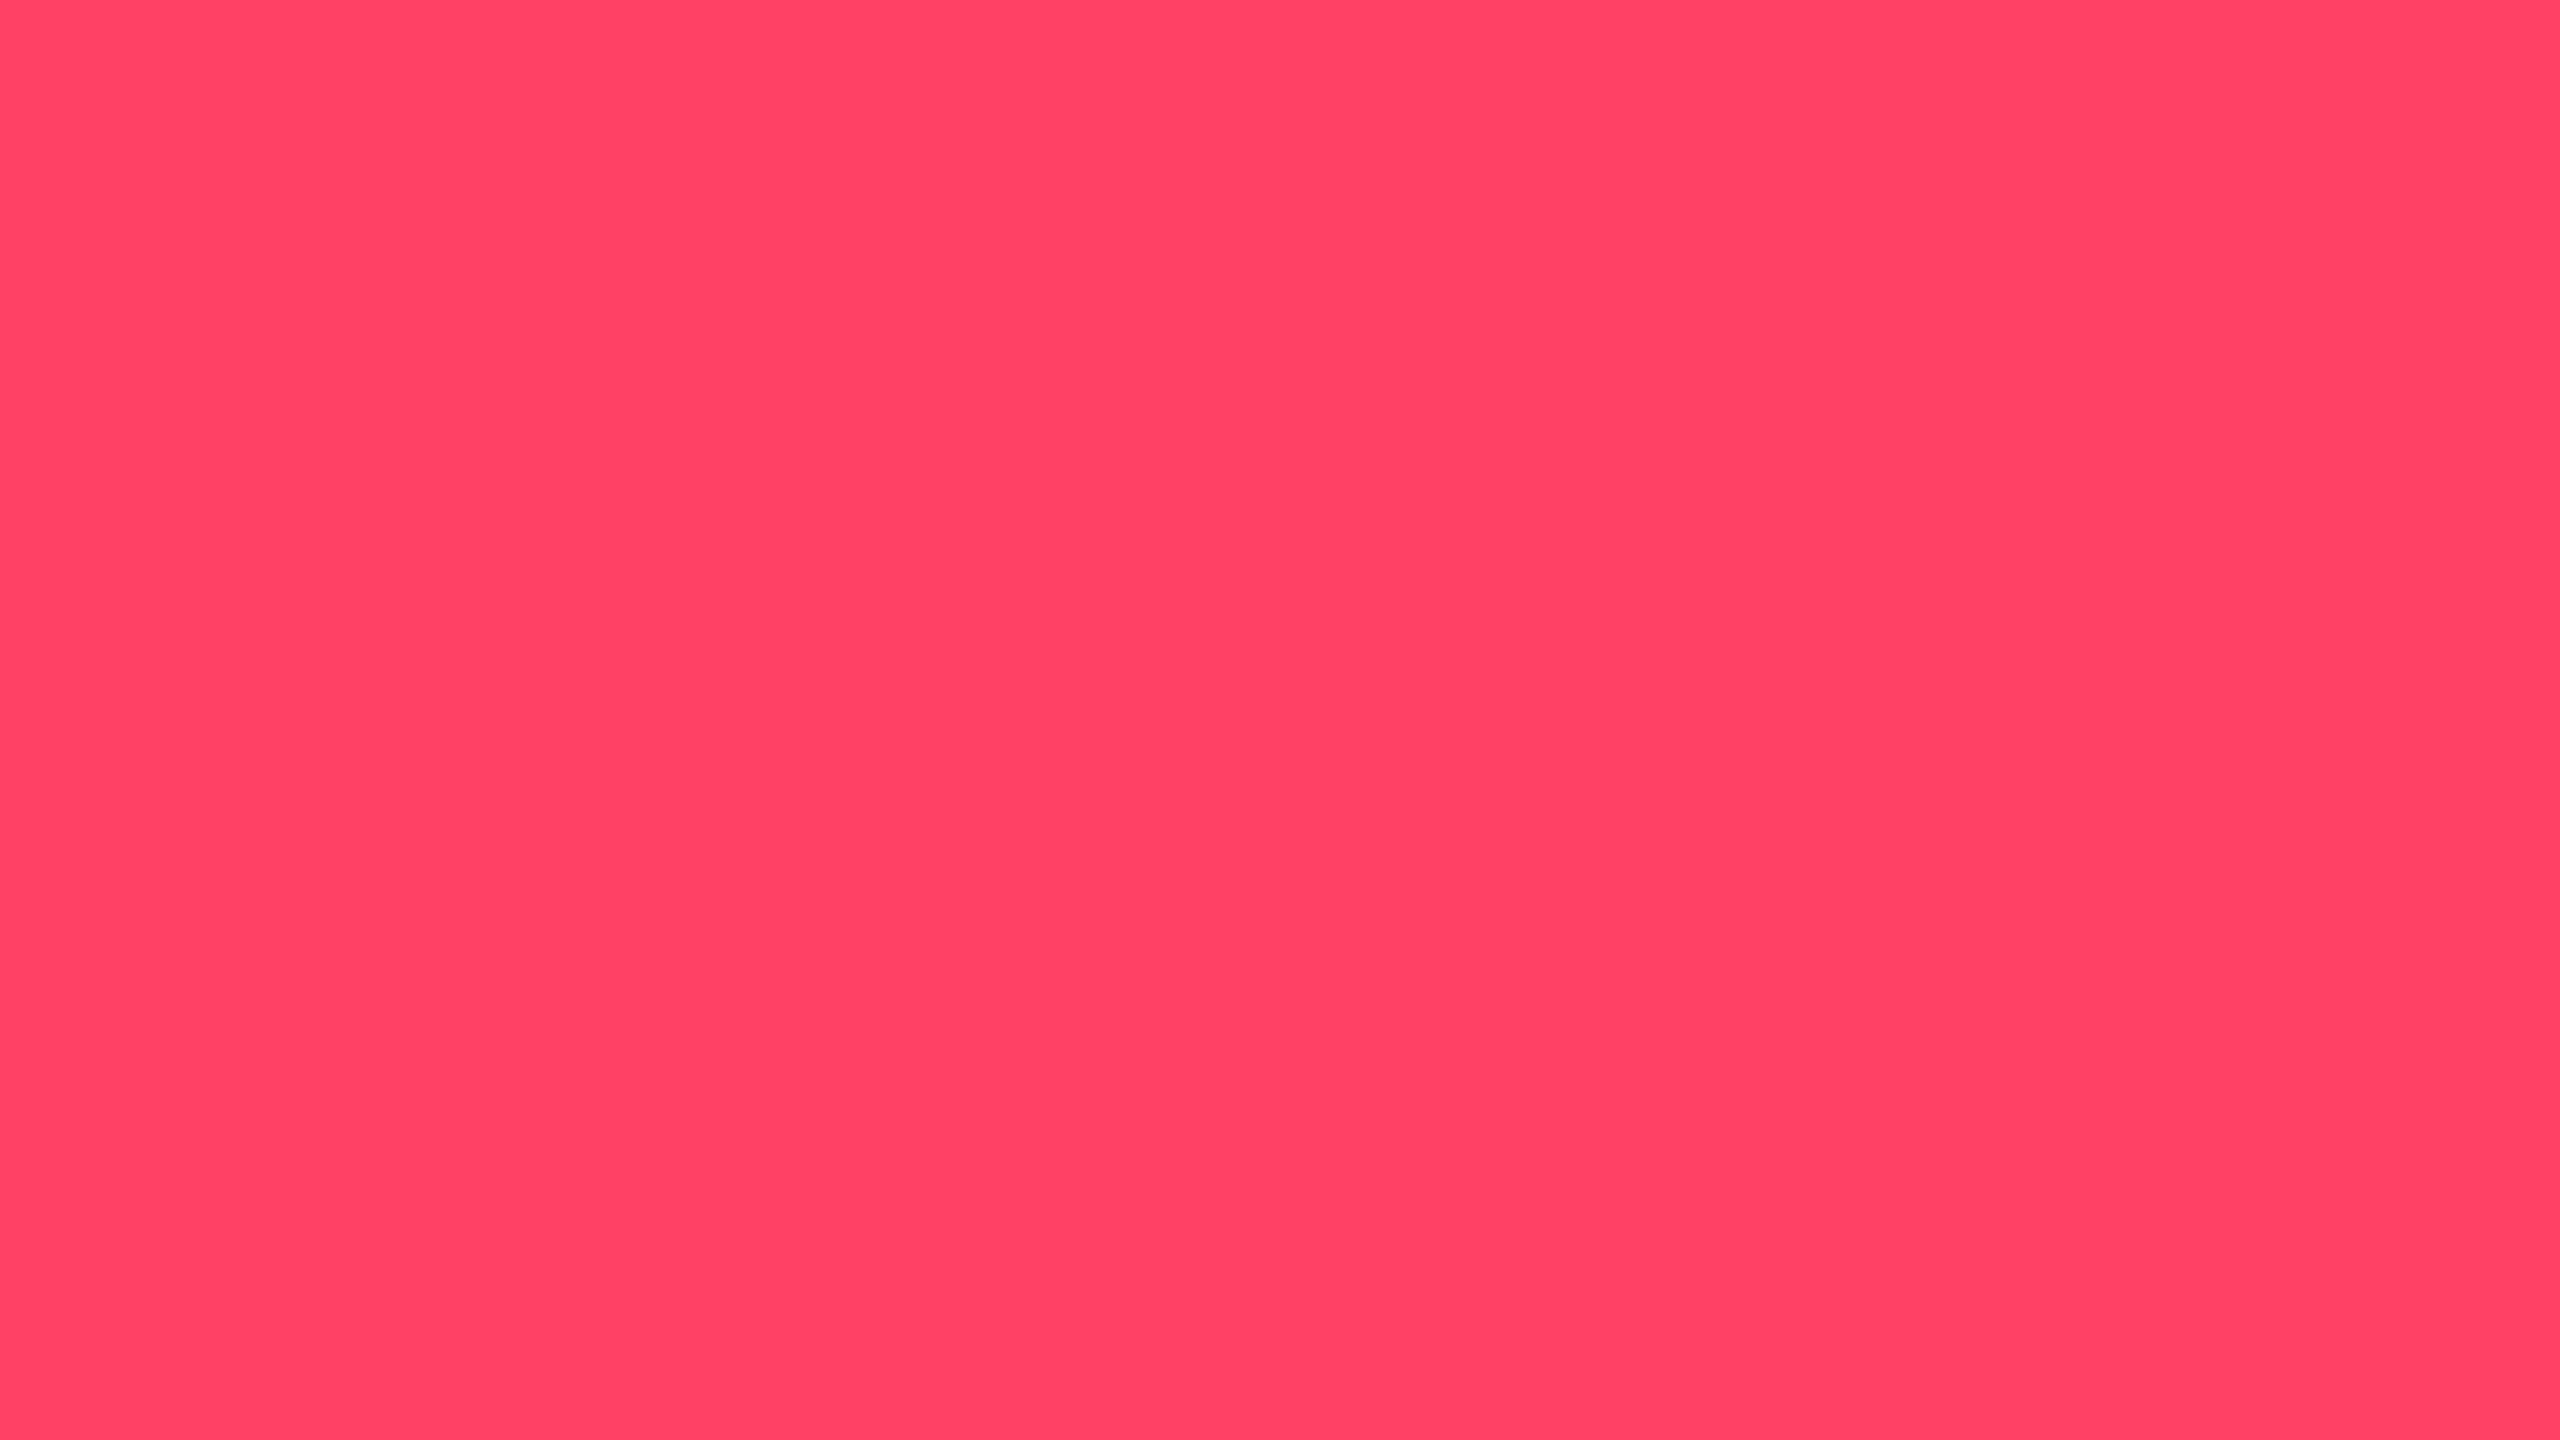 2560x1440  Neon Fuchsia Solid Color Background